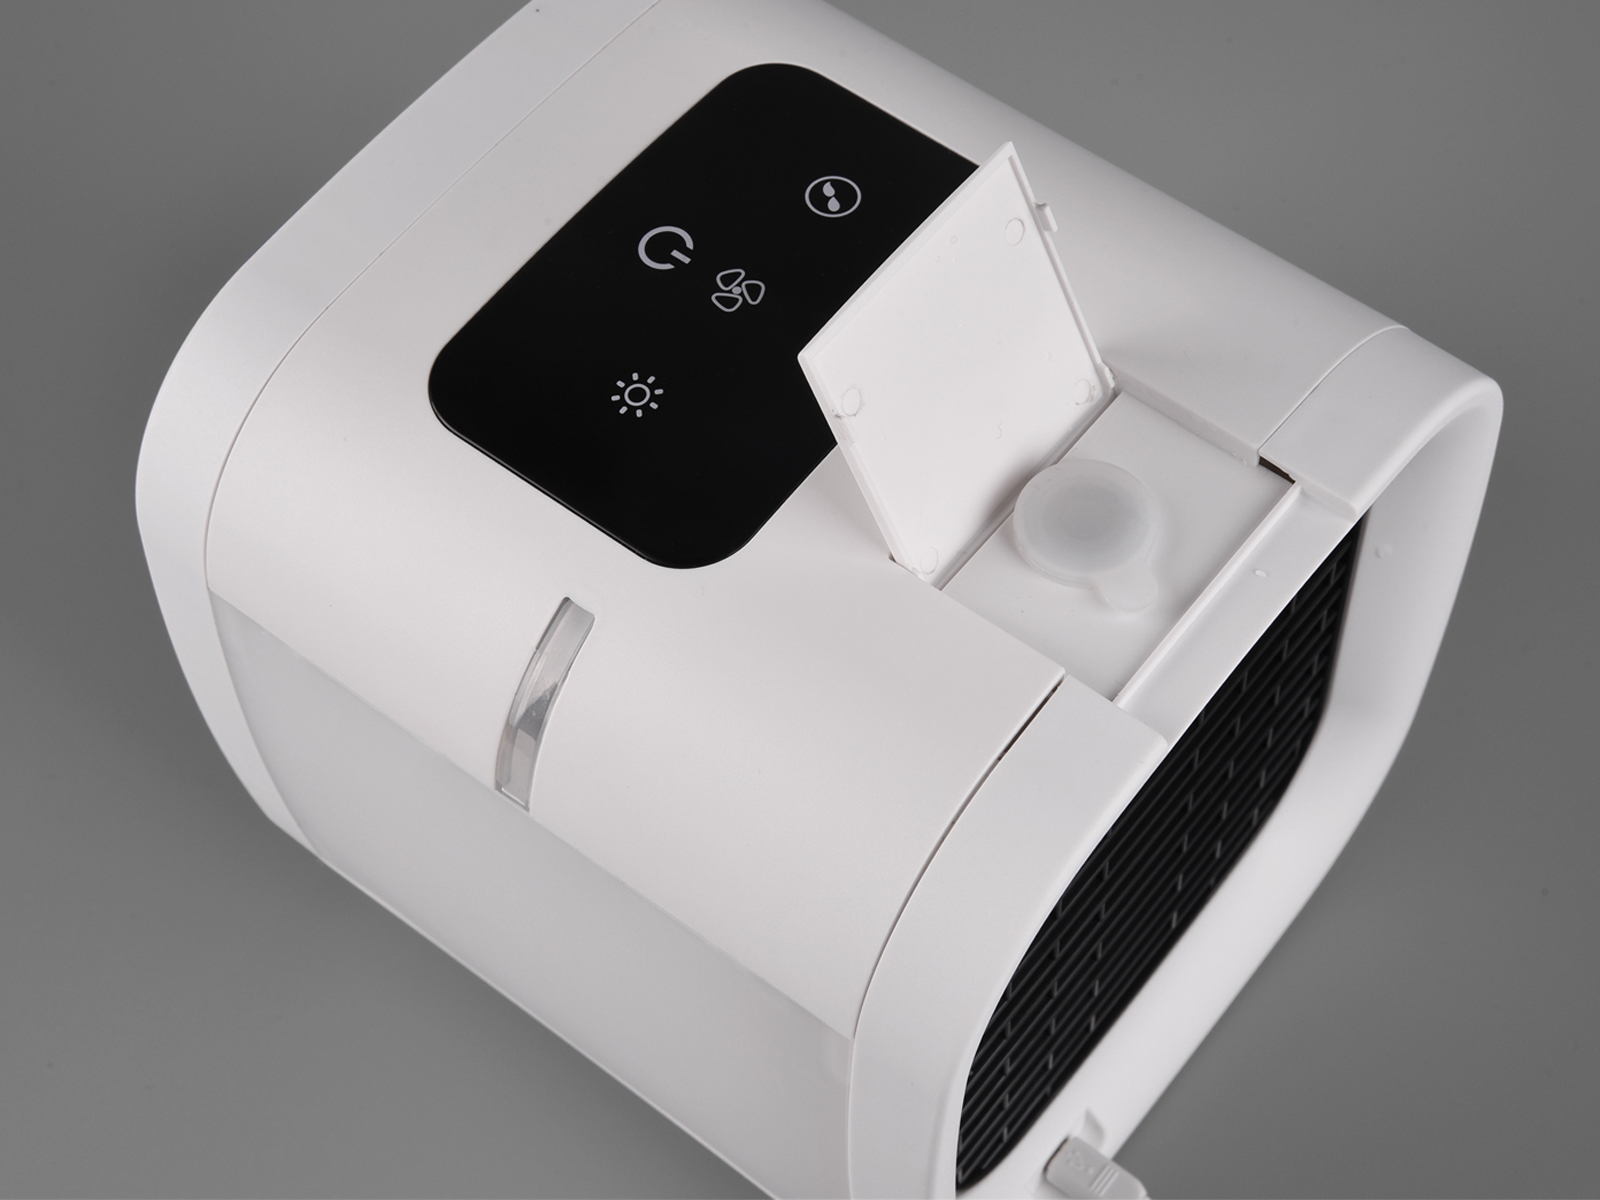 REALITY LEUCHTEN Lüfter & Tischventilator mit USB 2in1 Weiß Kühlfunktion, Wasser